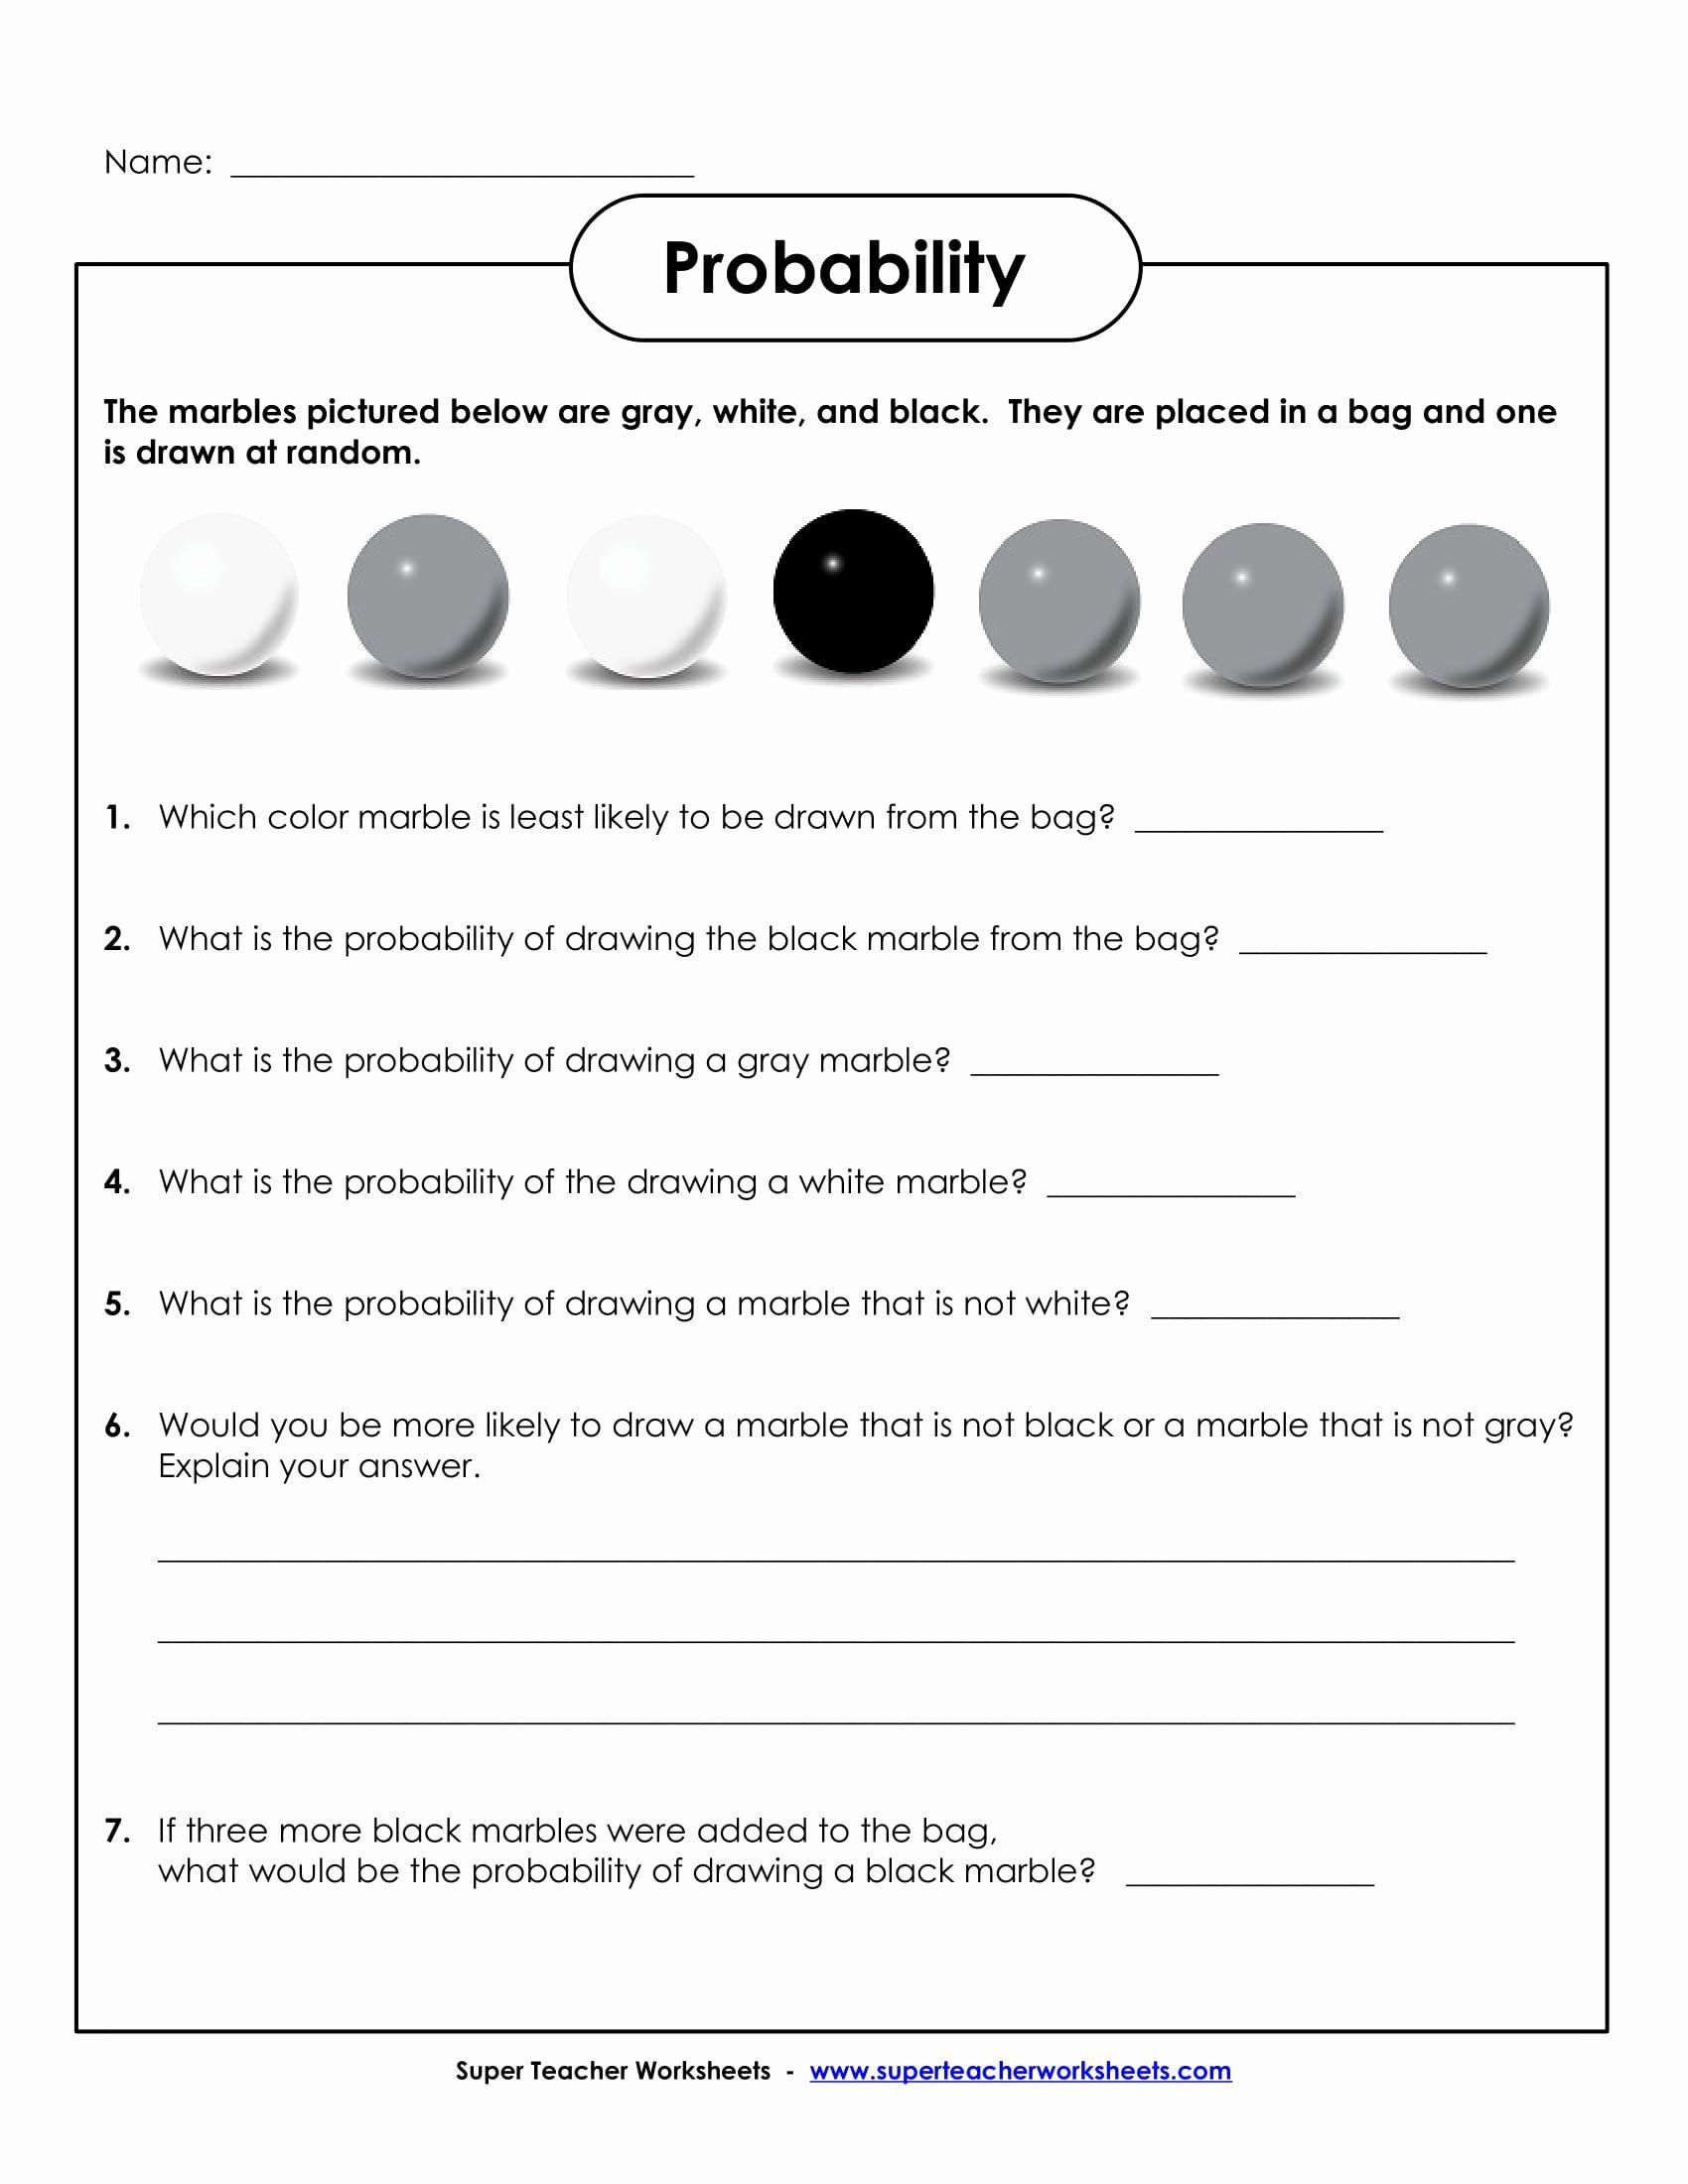 Simple Probability Worksheet Pdf Simple Probability Worksheet Pdf Lovely 9 Math Worksheets